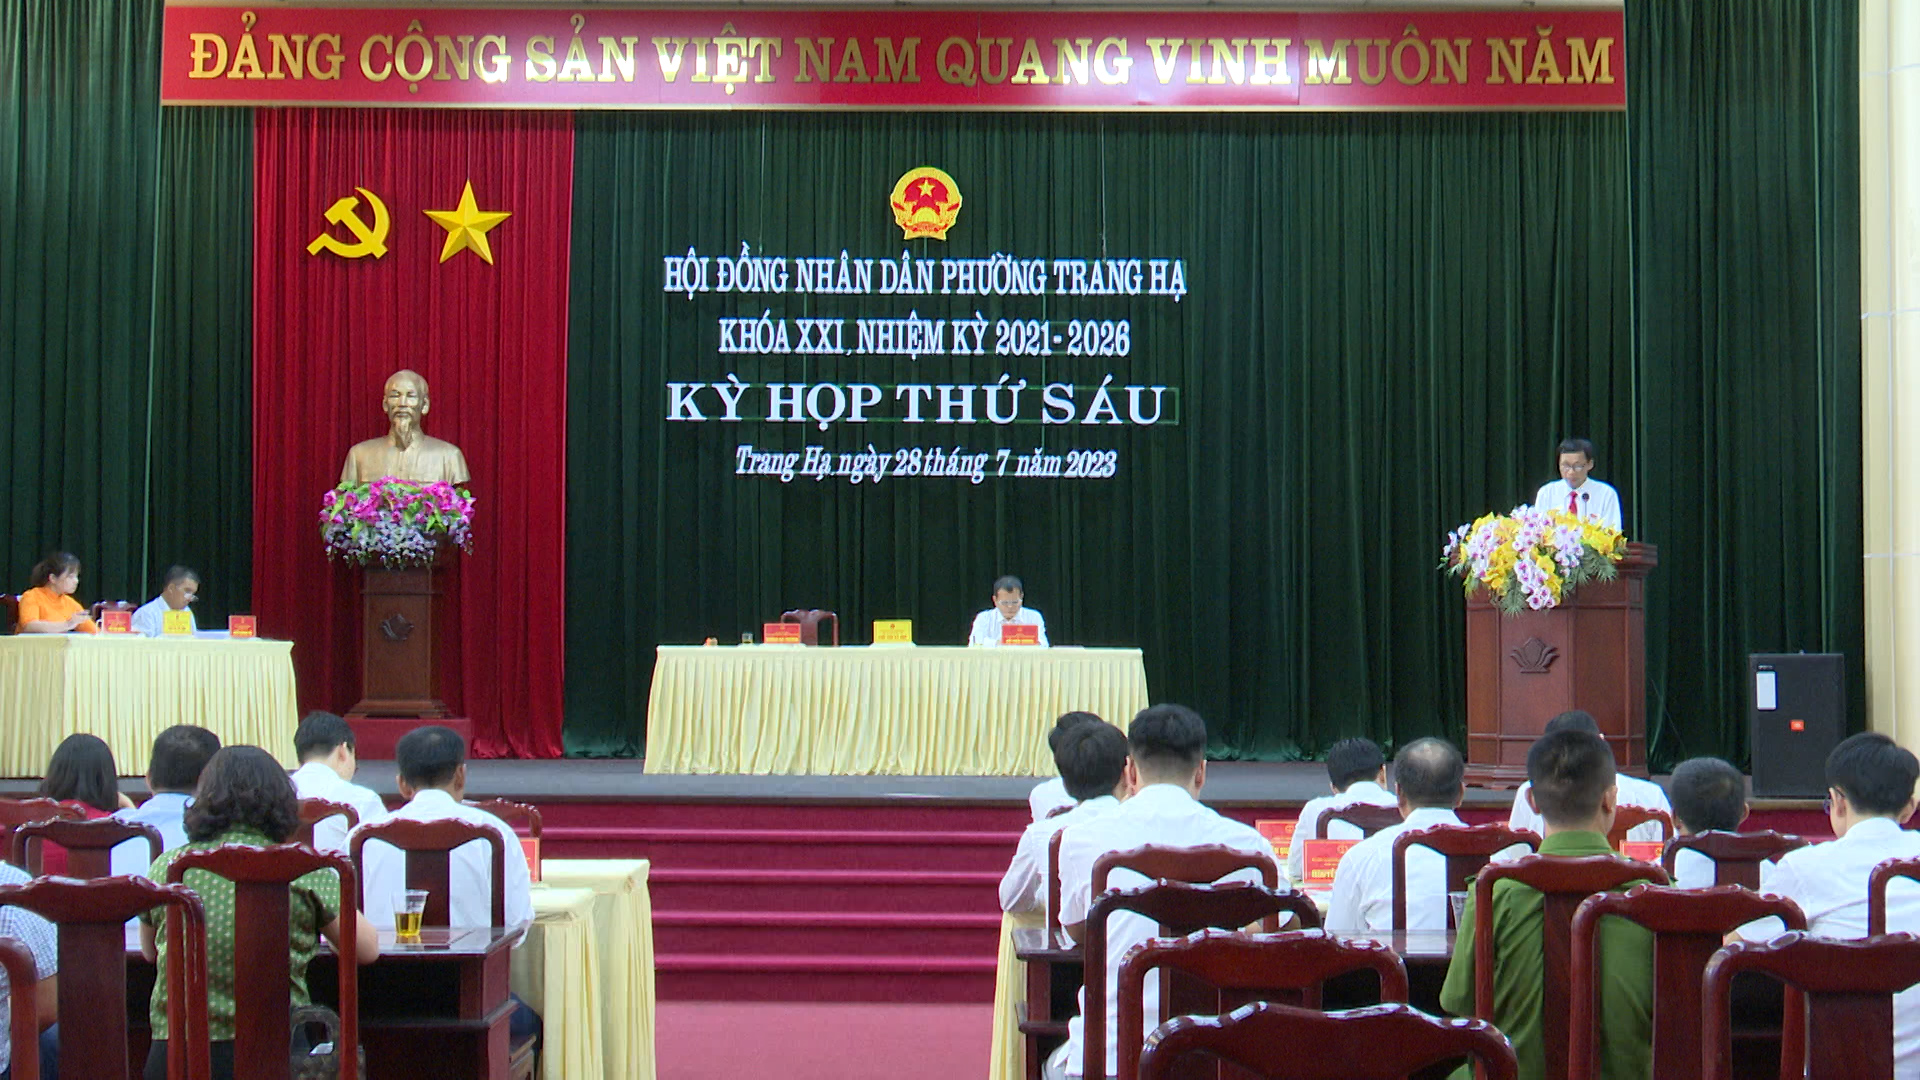 HĐND phường Trang Hạ khóa XXI tổ chức kỳ họp thứ 6 NK 2021-2026